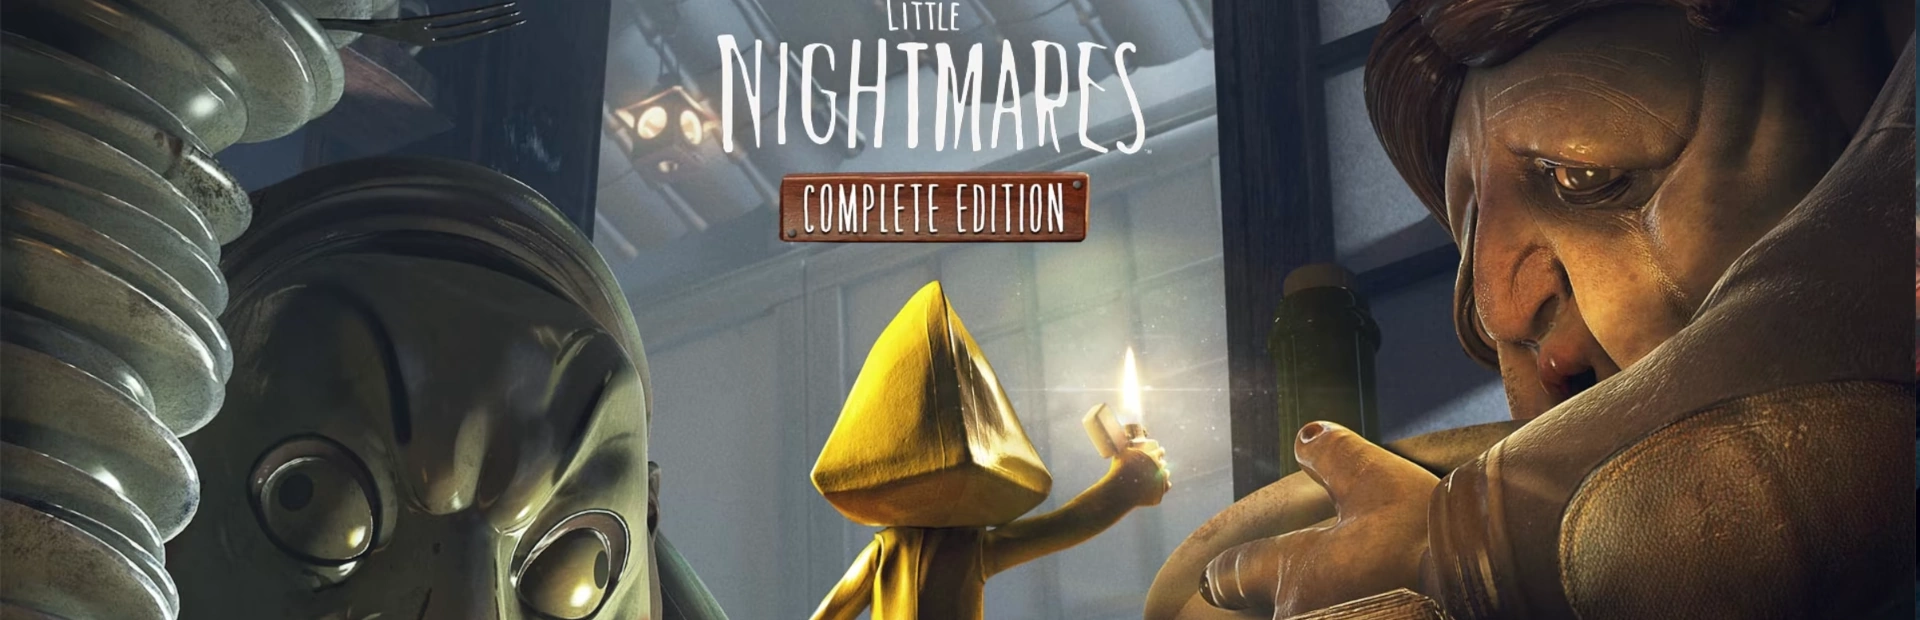 دانلود بازی Little Nightmares برای کامپیوتر | گیمباتو